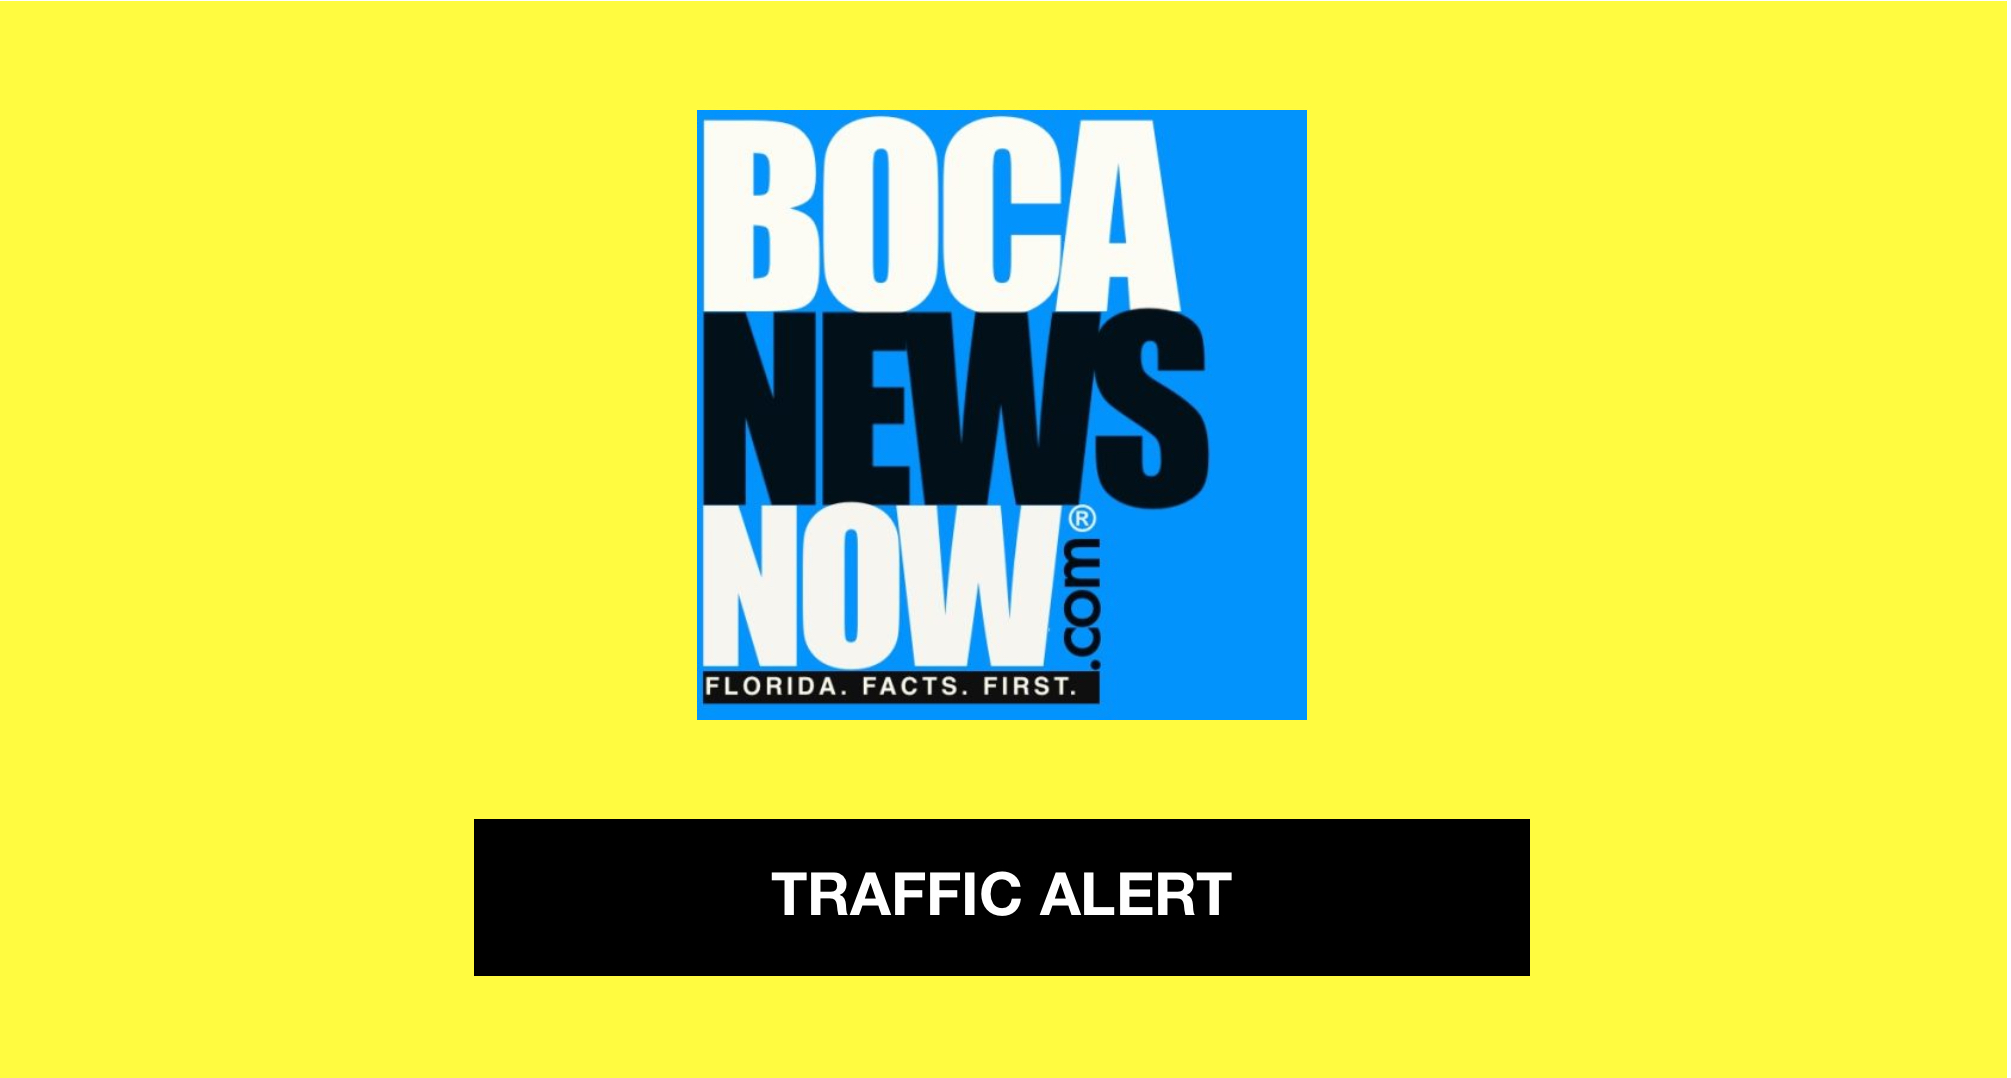 Traffic_Alert_BocaNewsNow